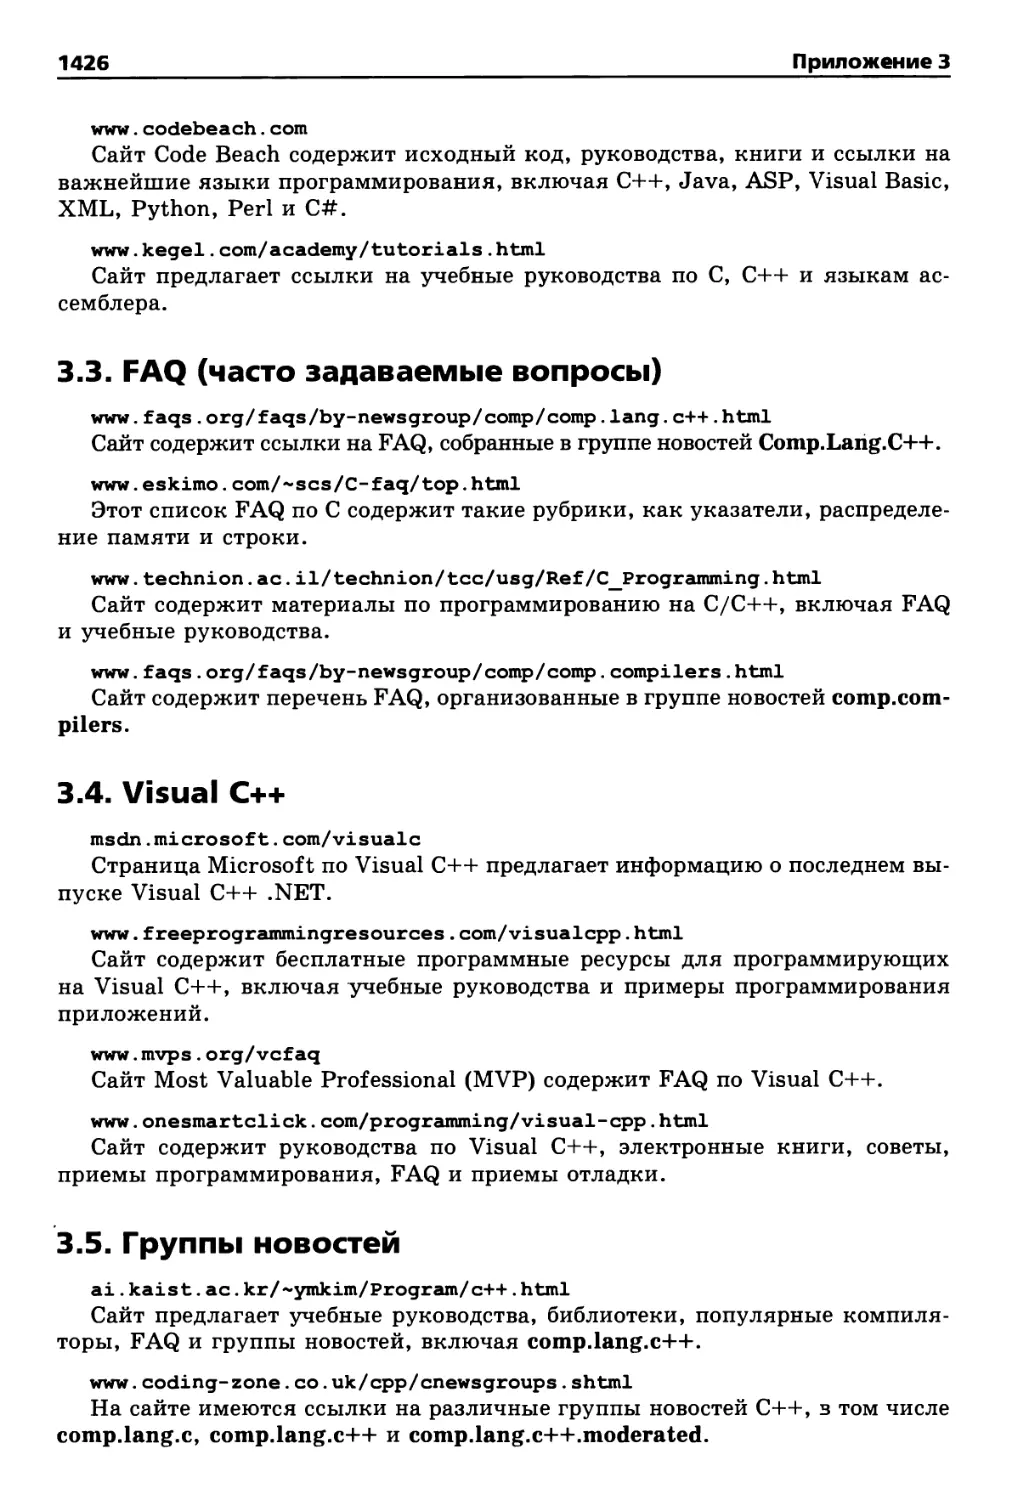 3.4. Visual C++
3.5. Группы новостей